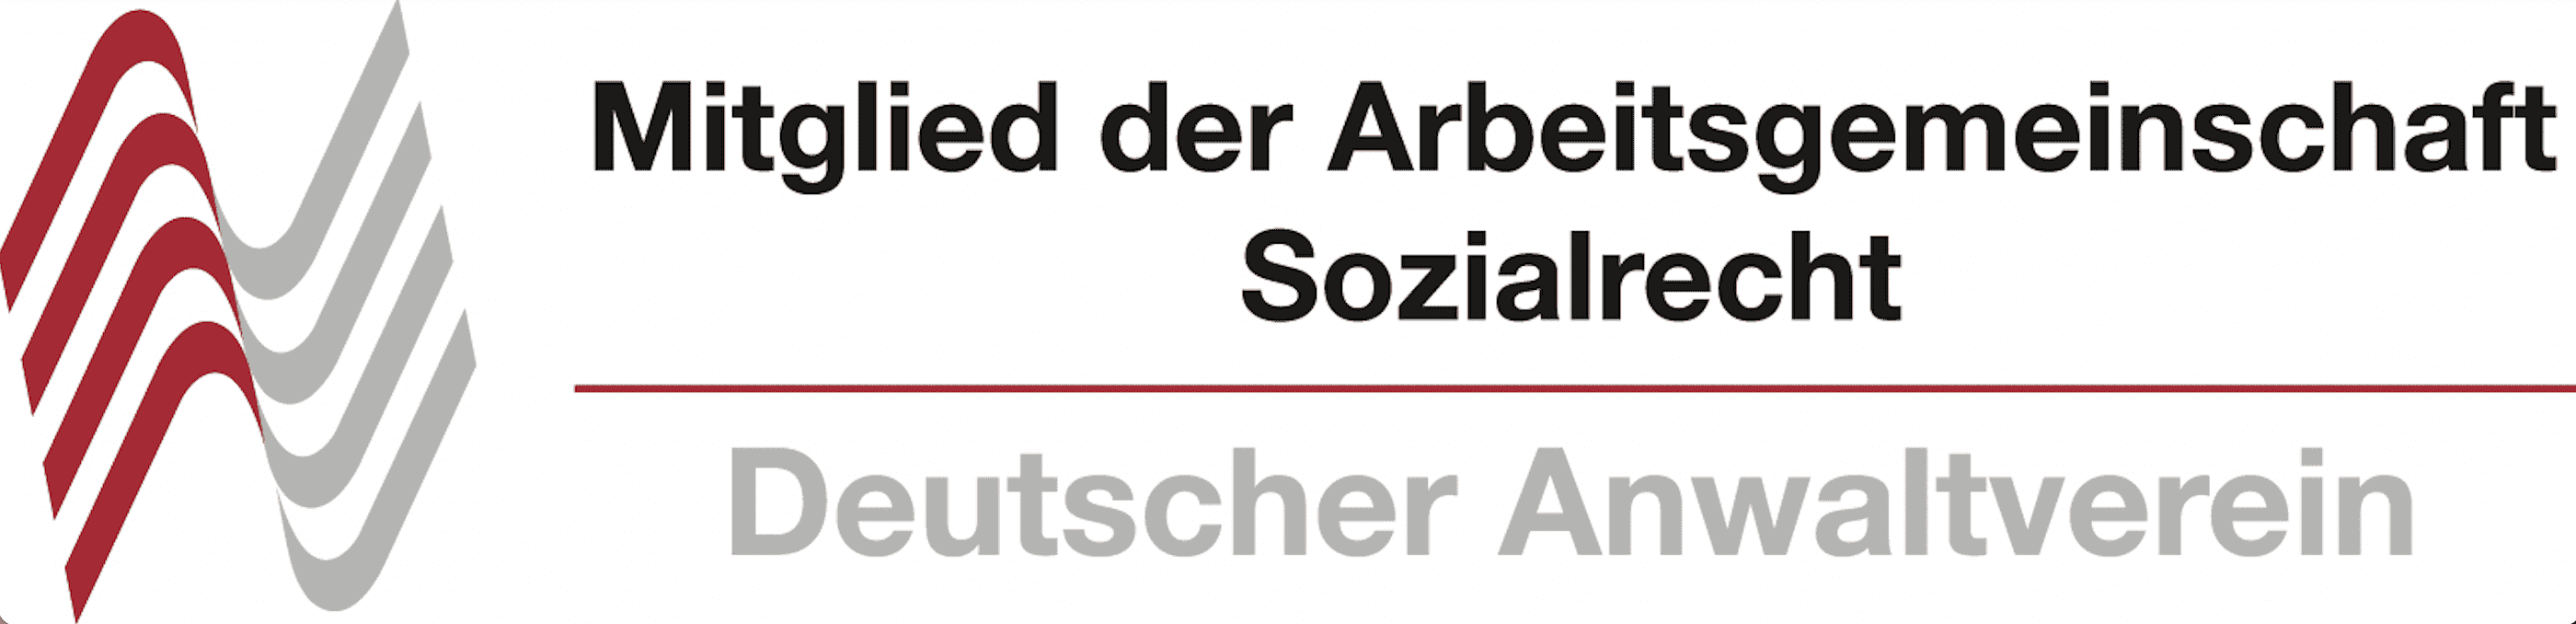 Arbeitsgemeinschaft Sozialrecht im Deutschen Anwaltverein e. V.